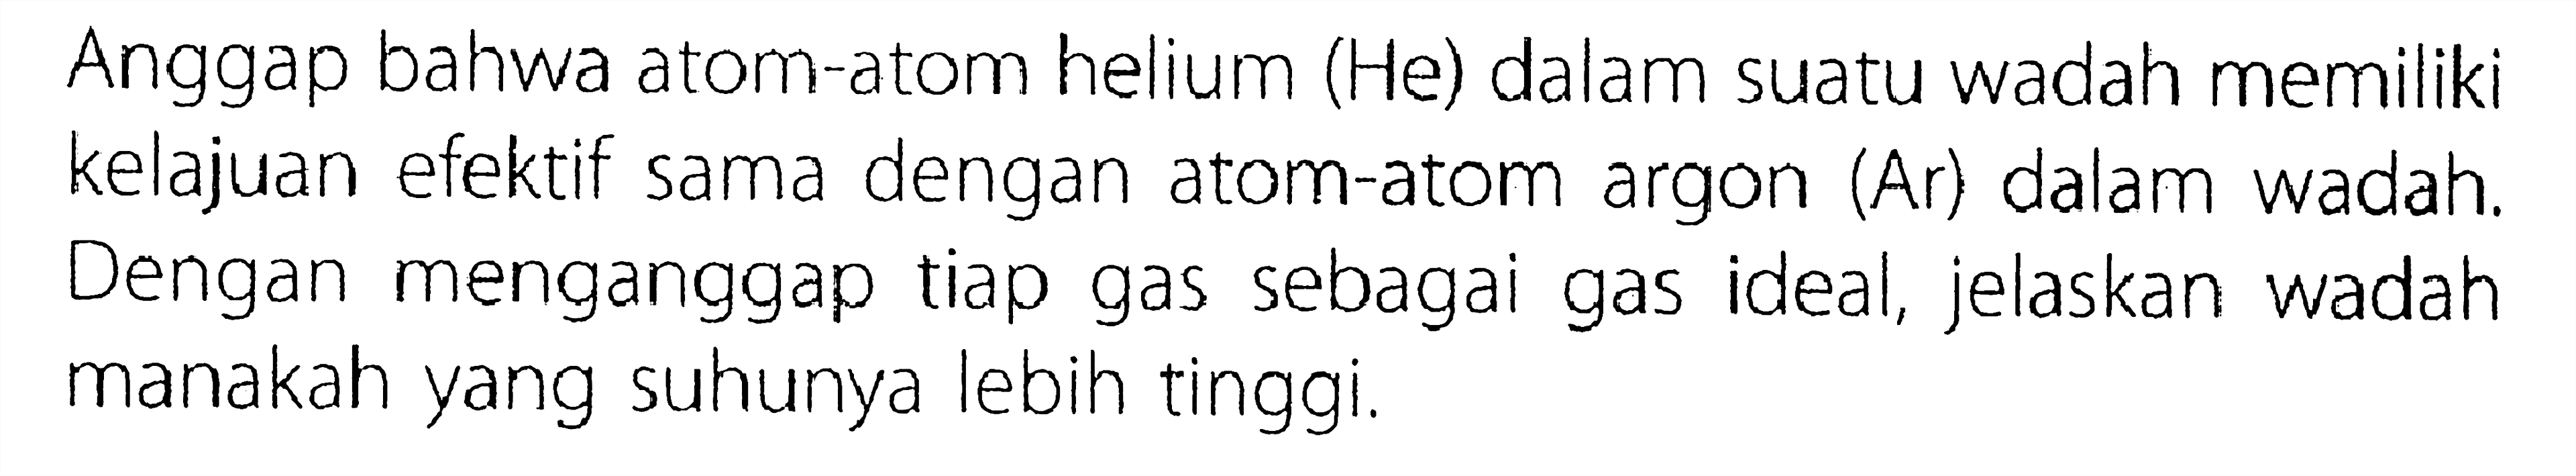 Anggap bahwa atom-atom helium (He) dalam suatu wadah memiliki kelajuan efektif sama dengan atom-atom argon (Ar) dalam wadah. Dengan menganggap tiap gas sebagai gas ideal, jelaskan wadah manakah yang suhunya lebih tinggi.